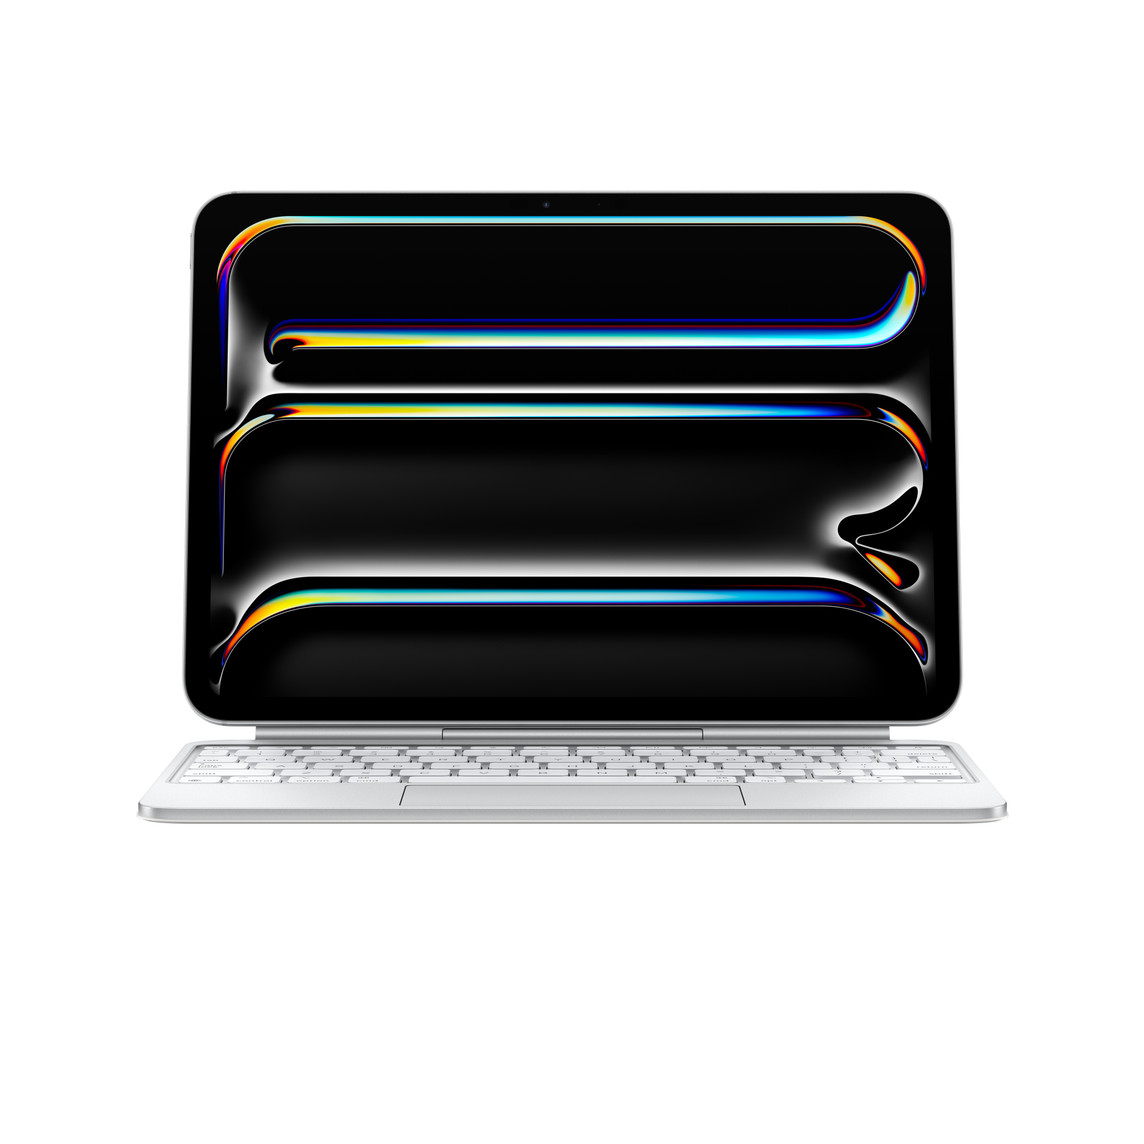 iPad Pro fixé au Magic Keyboard en orientation paysage, iPad Pro surélevé par rapport au clavier, blanc